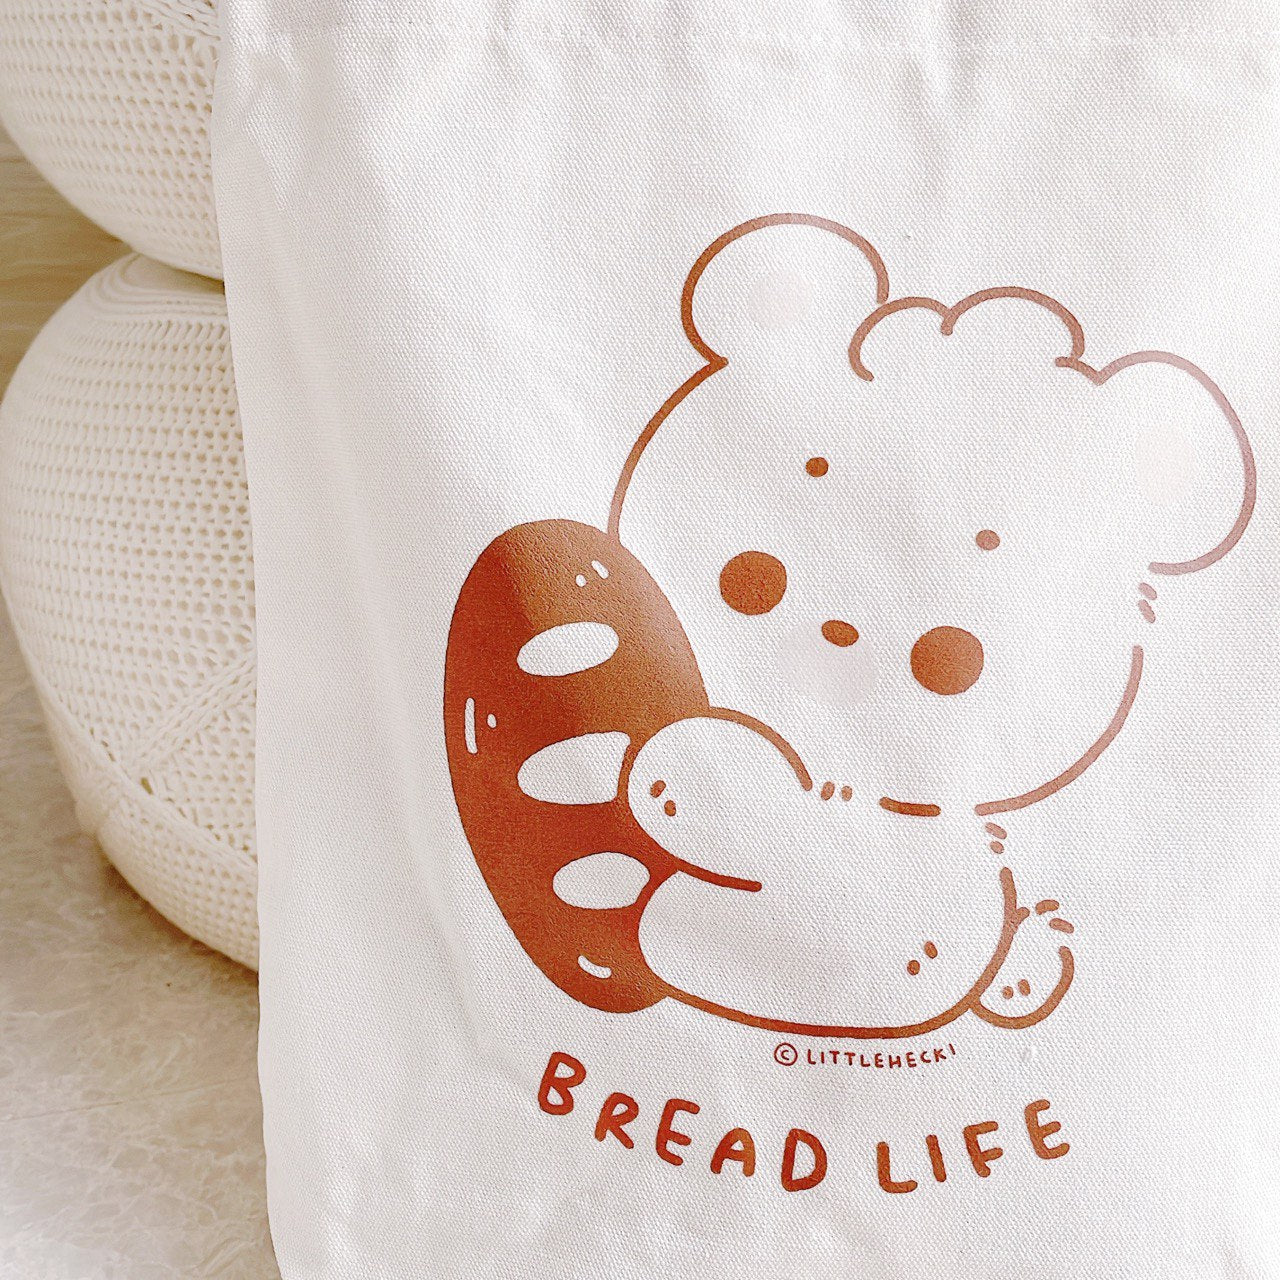 Bread Life Tote